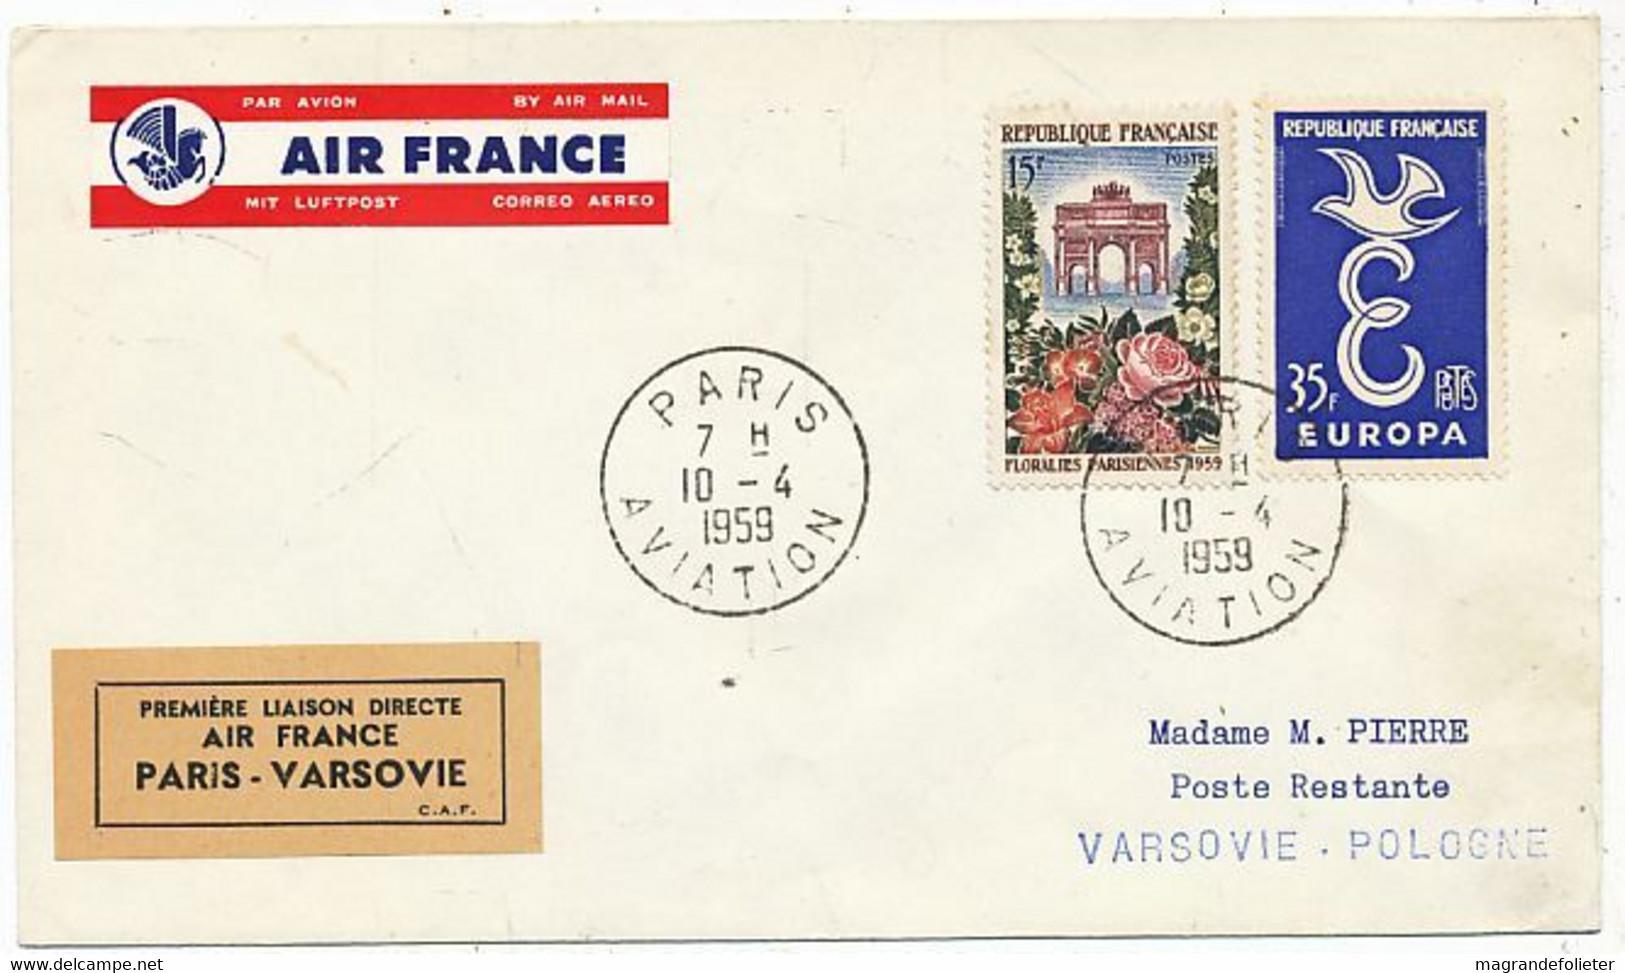 AVION AVIATION AIRLINE AIR FRANCE PREMIERE VOL DIRECT PARIS-VARSOVIE 1959 - Brevetti Di Volo